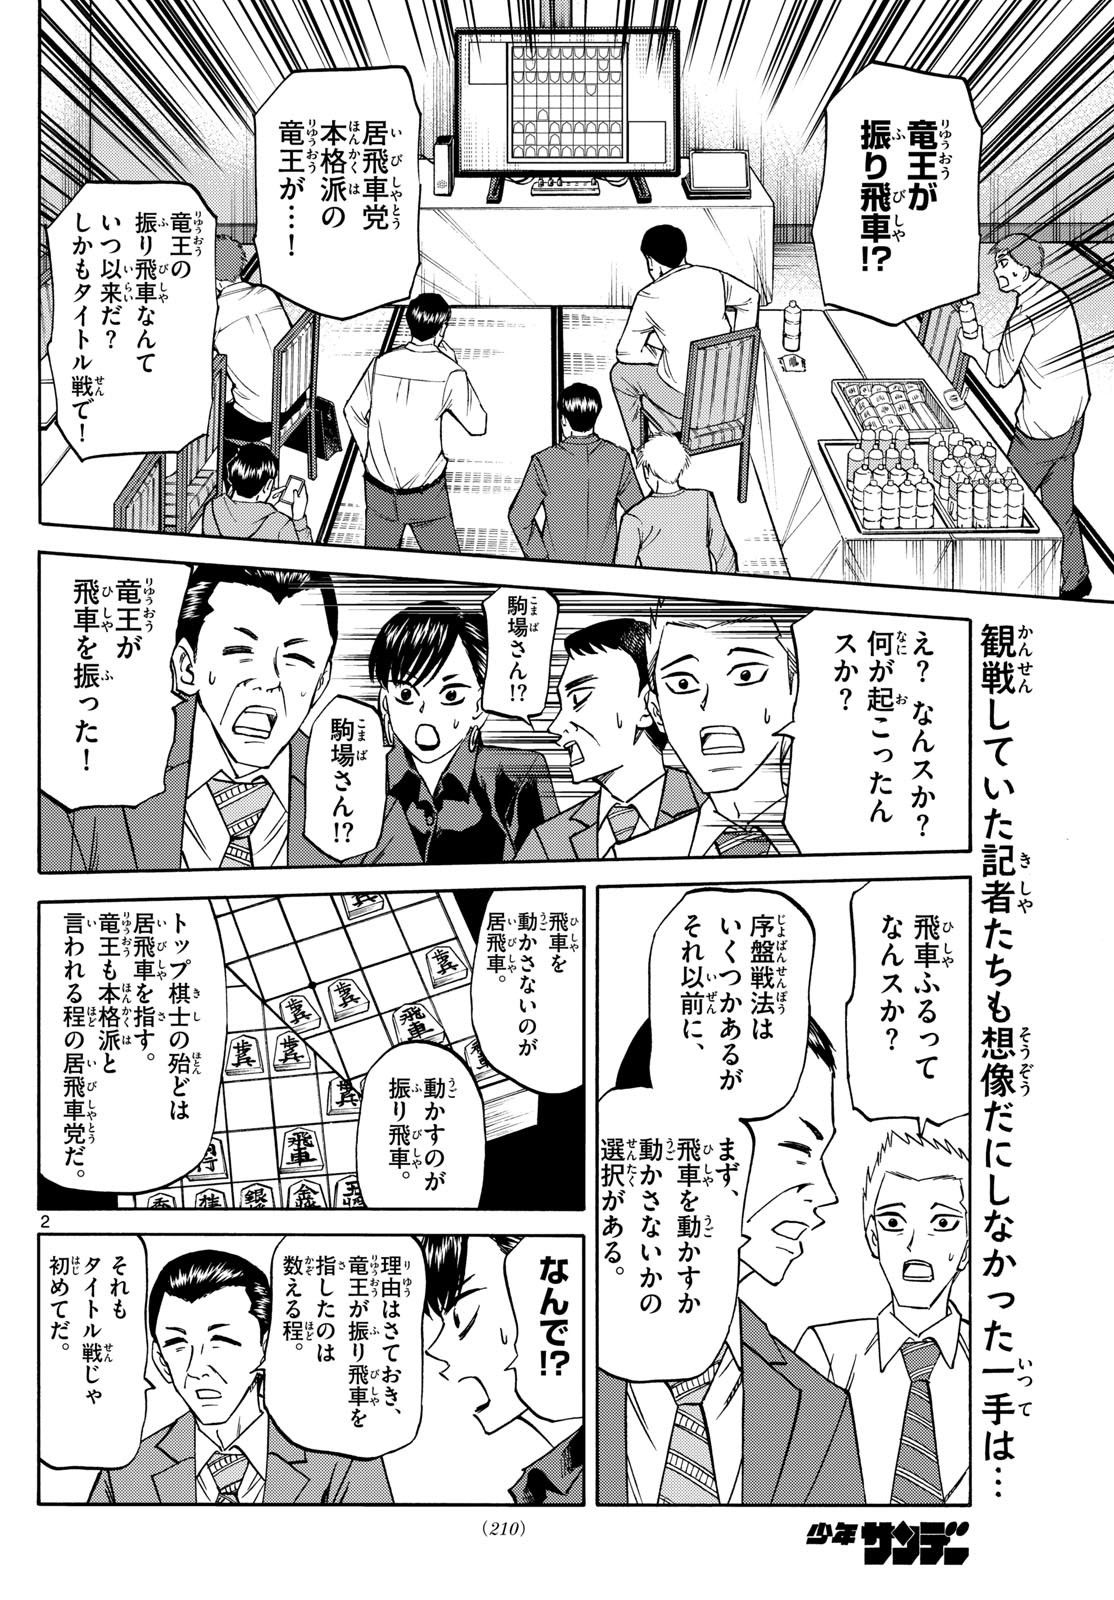 Ryu-to-Ichigo - Chapter 162 - Page 2